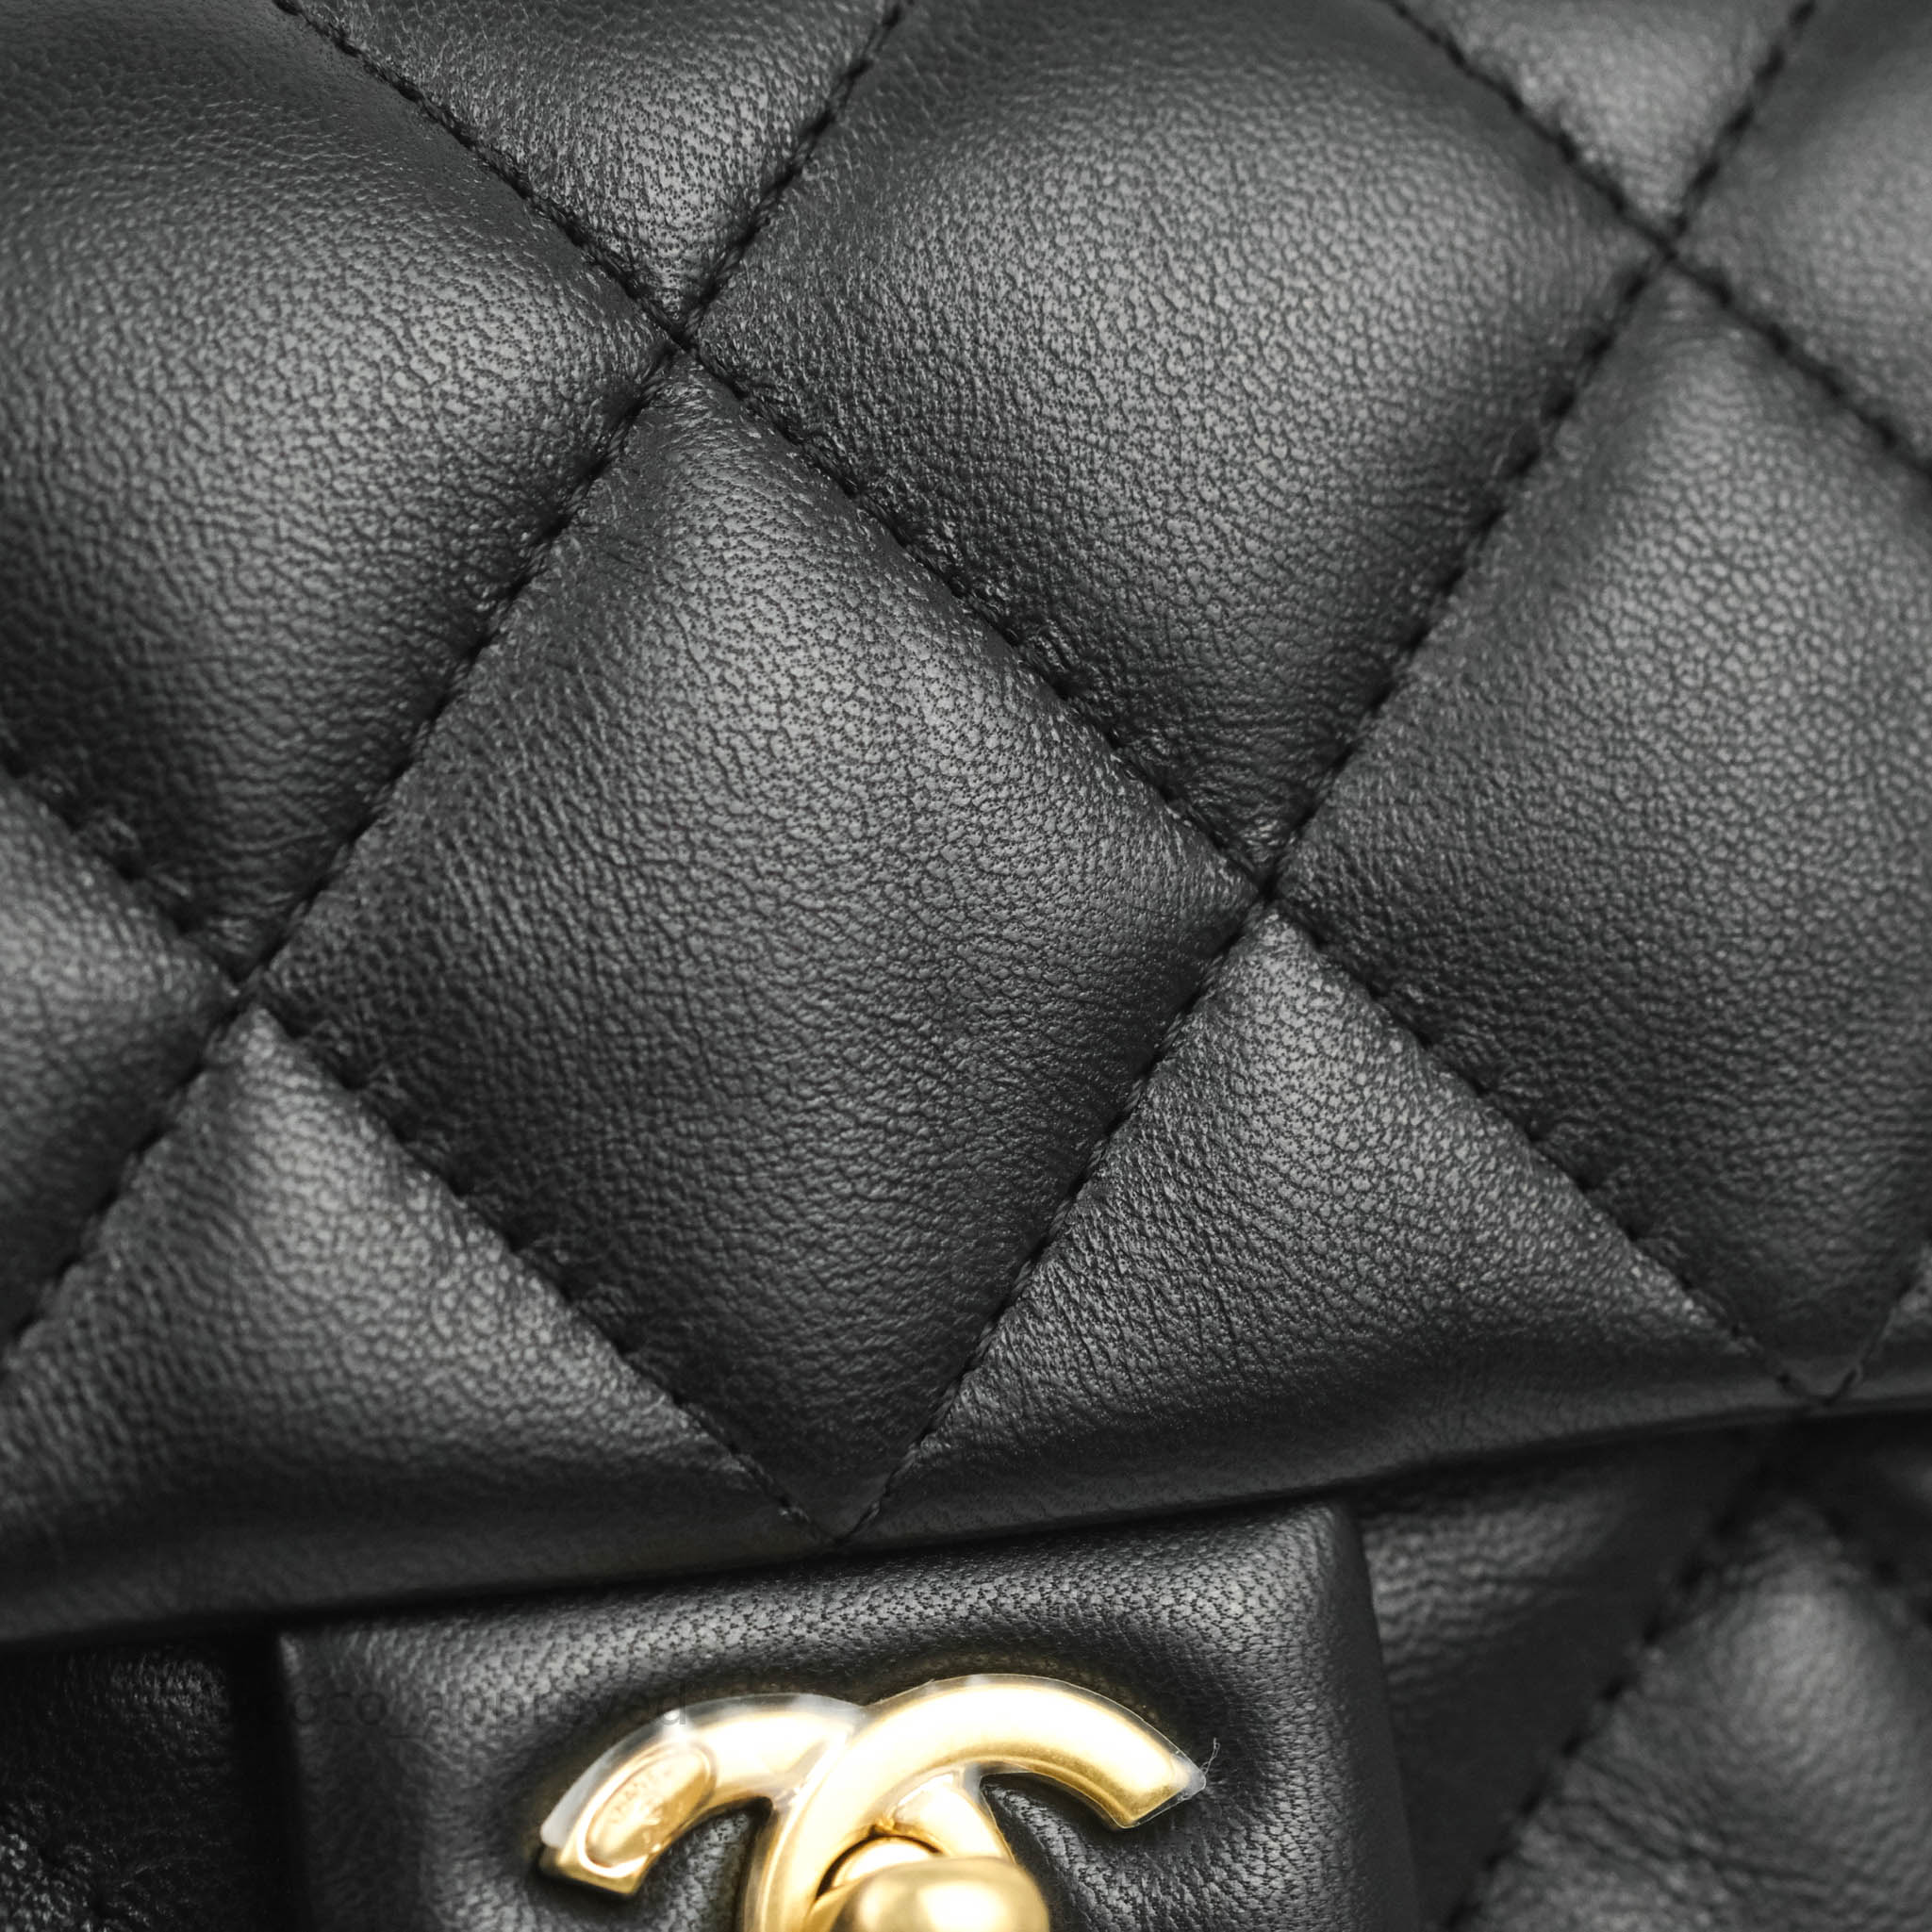 Chanel 22B Heart Charms Mini Flap Bag in Black Lambskin | Dearluxe